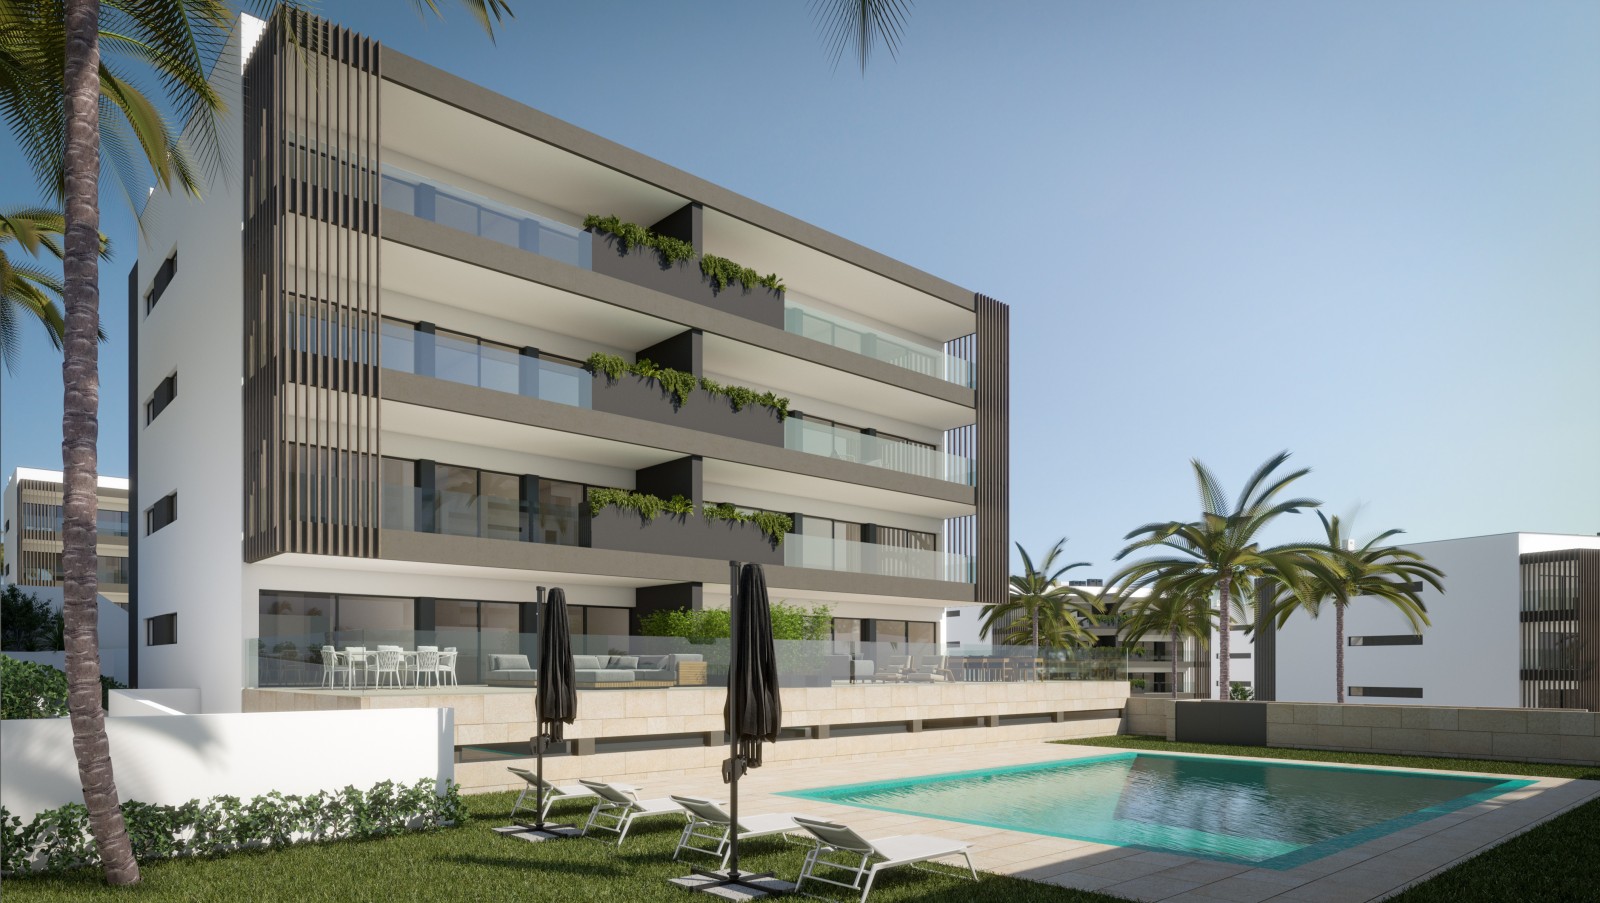 Moderno Piso de 2 dormitorios, urbanización cerrada, en Alvor, Algarve_246961